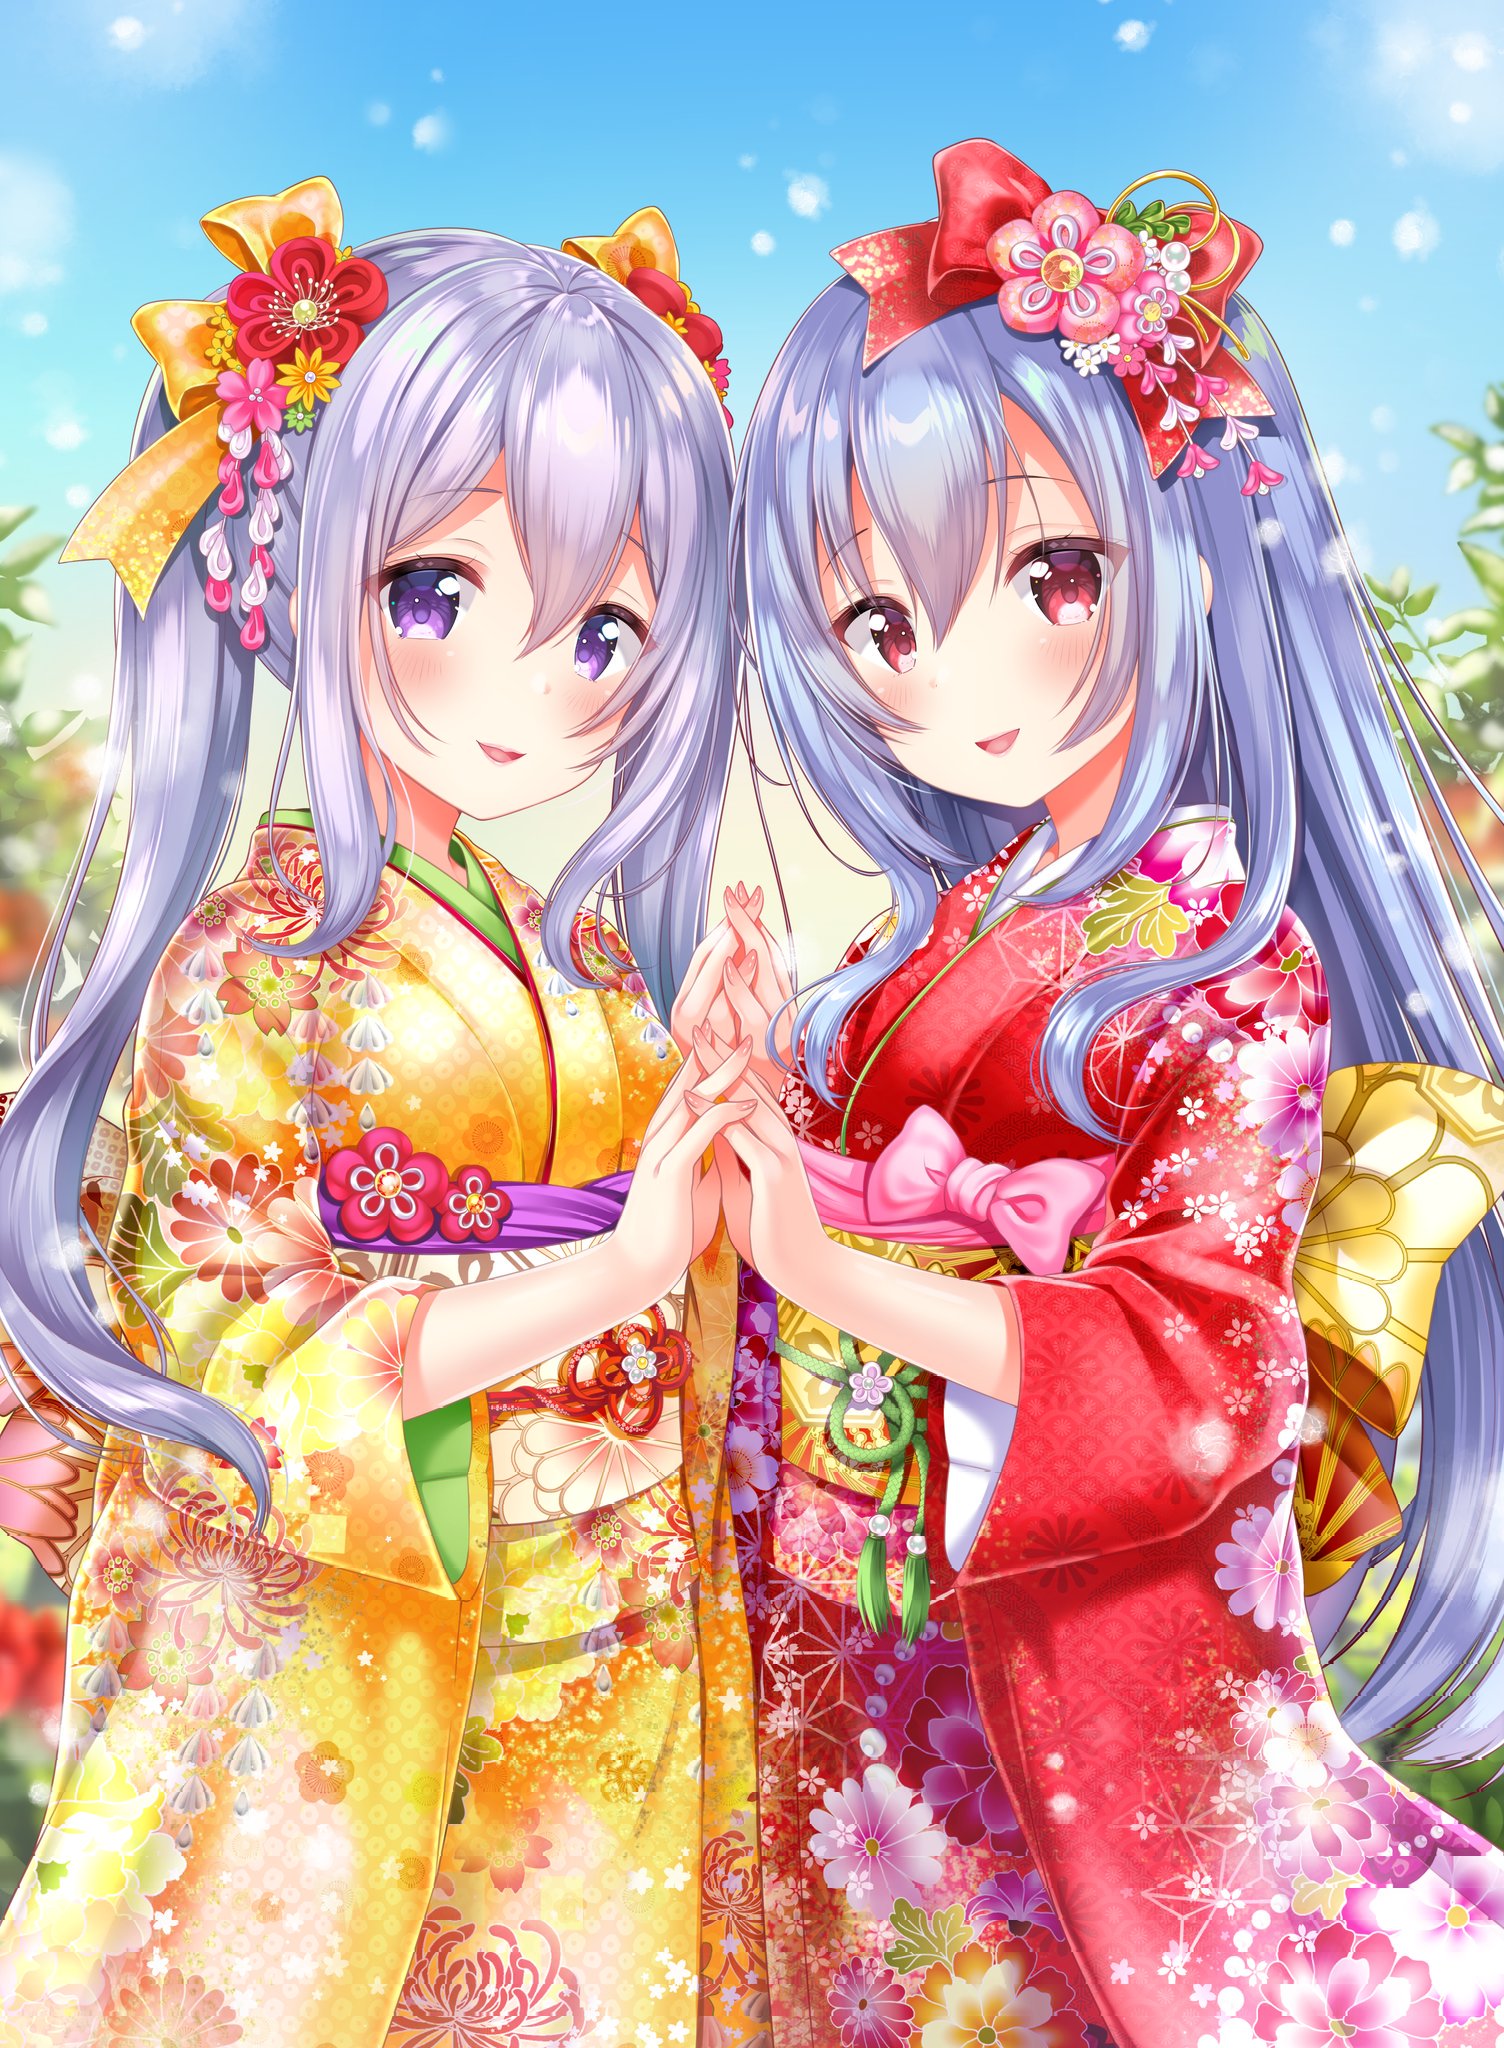 动漫图片:动漫姊妹日本和服,单纯的觉得好看10p